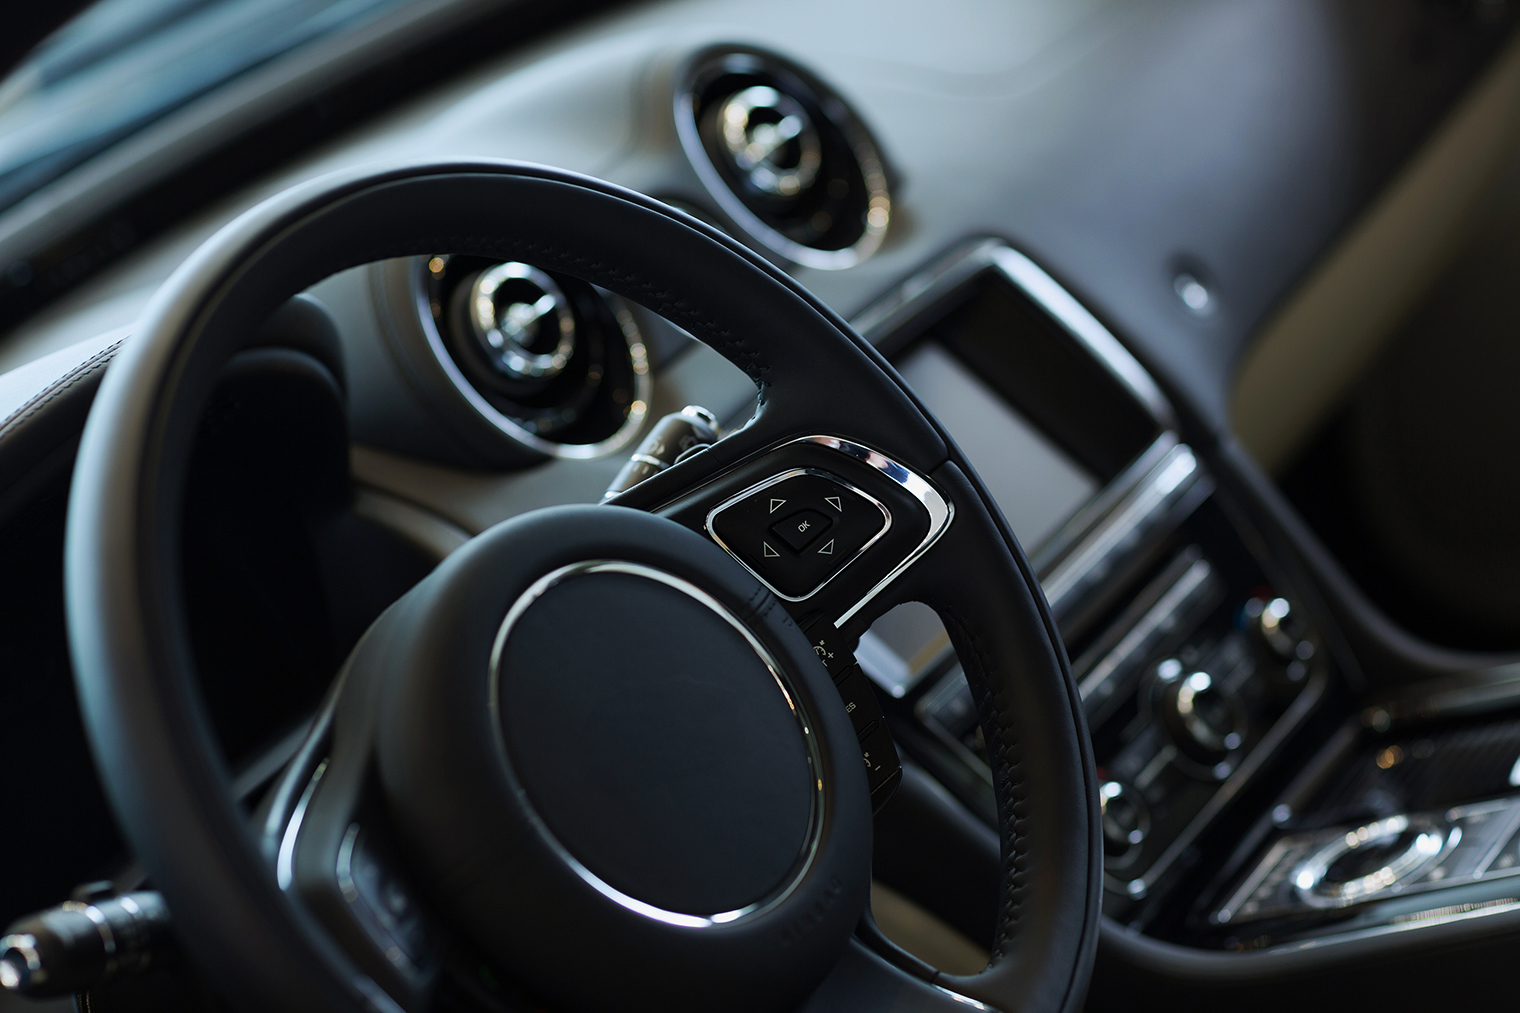 Кнопка штатного звукового сигнального прибора, или гудка, — обычно в центре рулевого колеса. Источник: Sergey Nivens / Shutterstock / FOTODOM